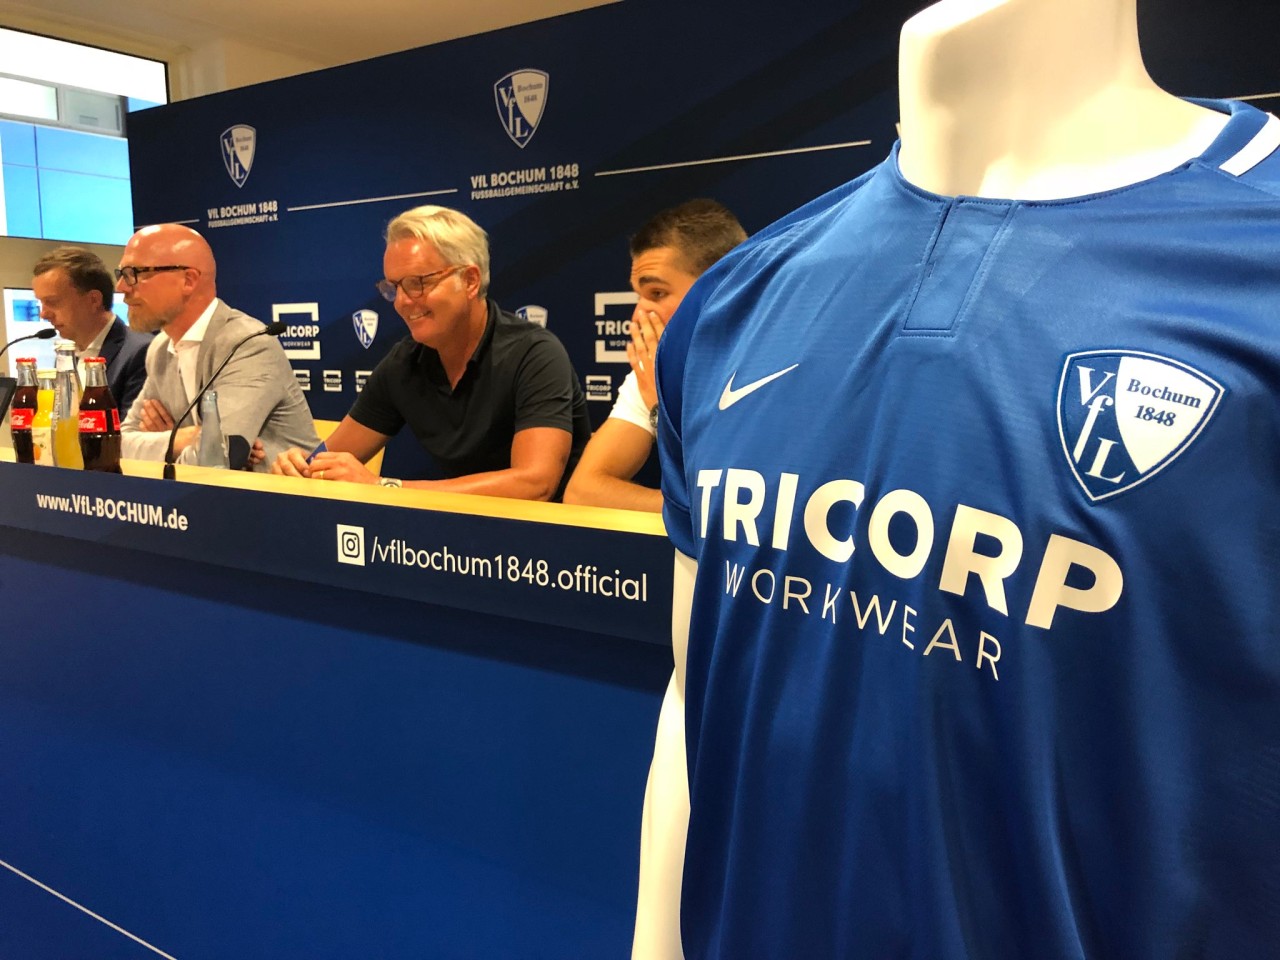 Der neue Hauptsponsor des VfL Bochum kommt aus den Niederlanden: Tricorp Workwear ziert ab sofort die Bochumer Trikotbrust.